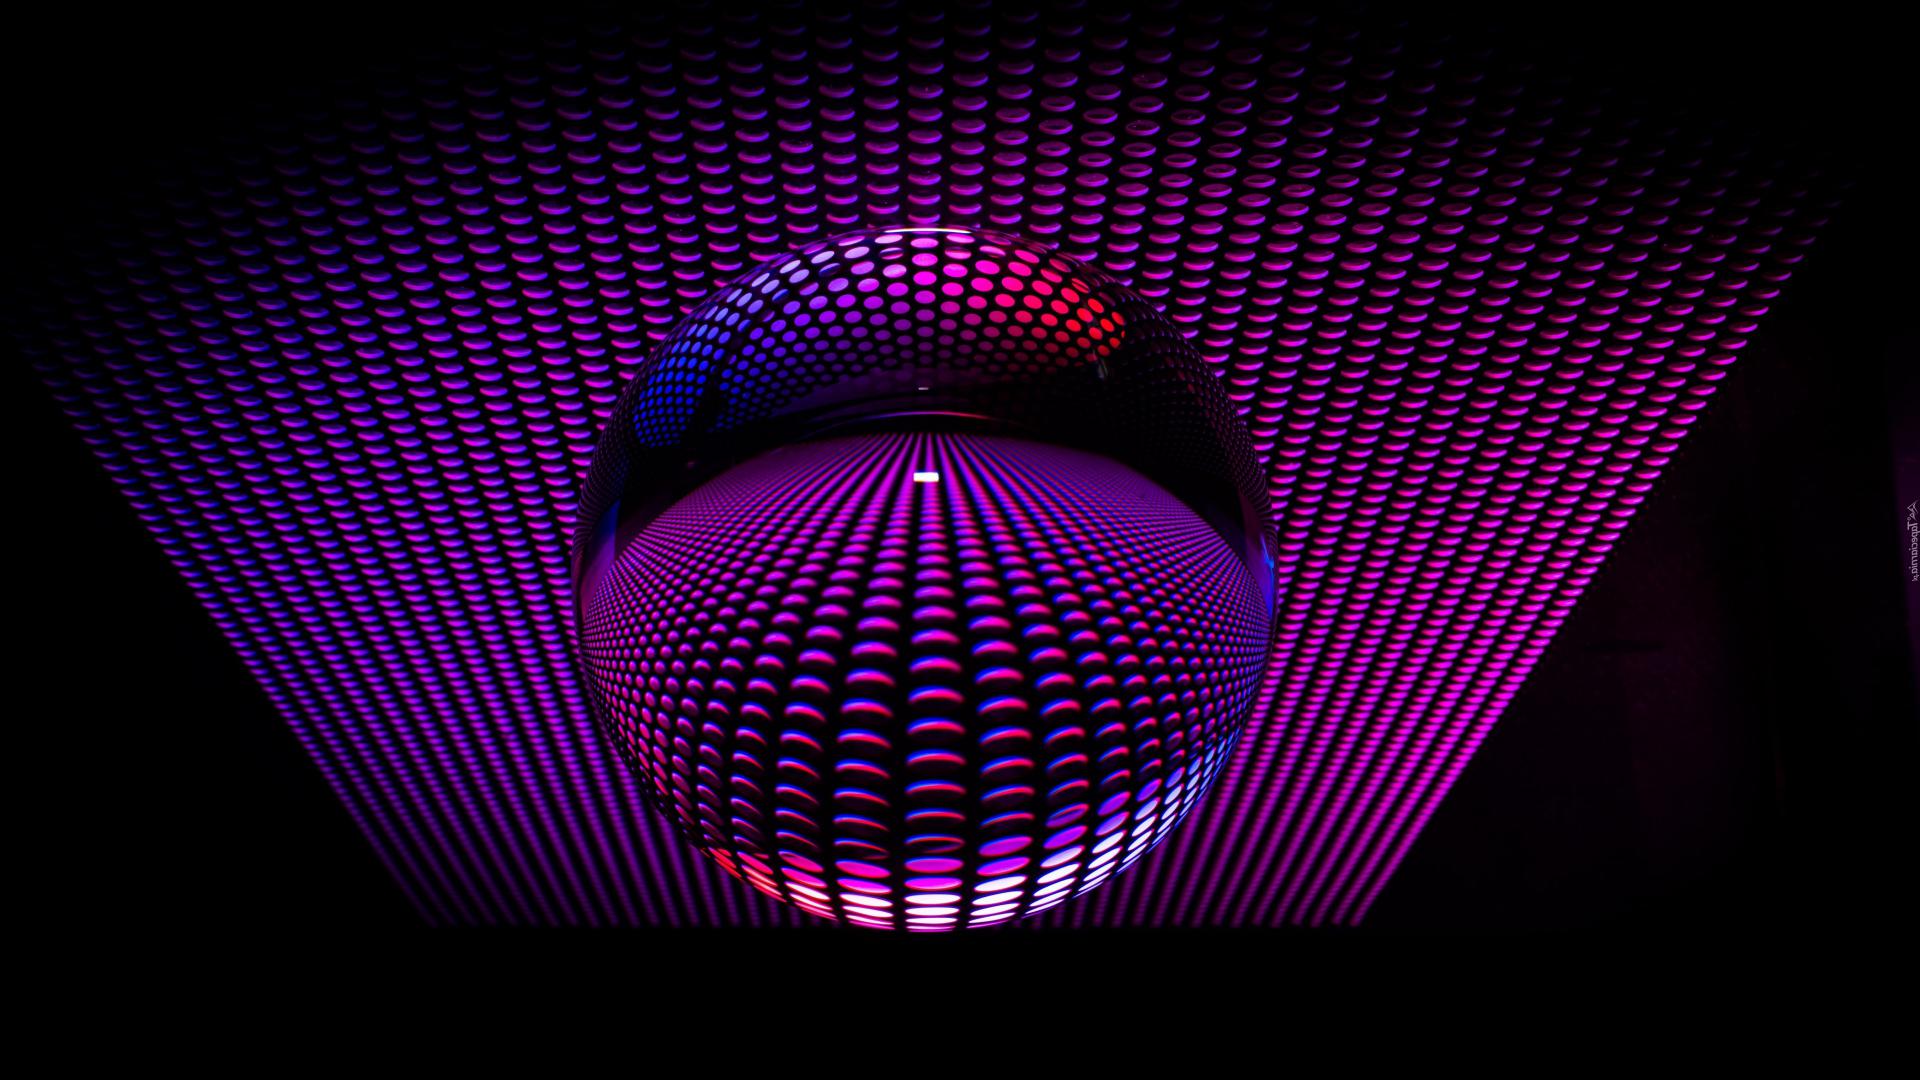 Стеклянная сфера, фиолетовый фон, 3д графика, 3д обои, 3840 на 2160 пикселей